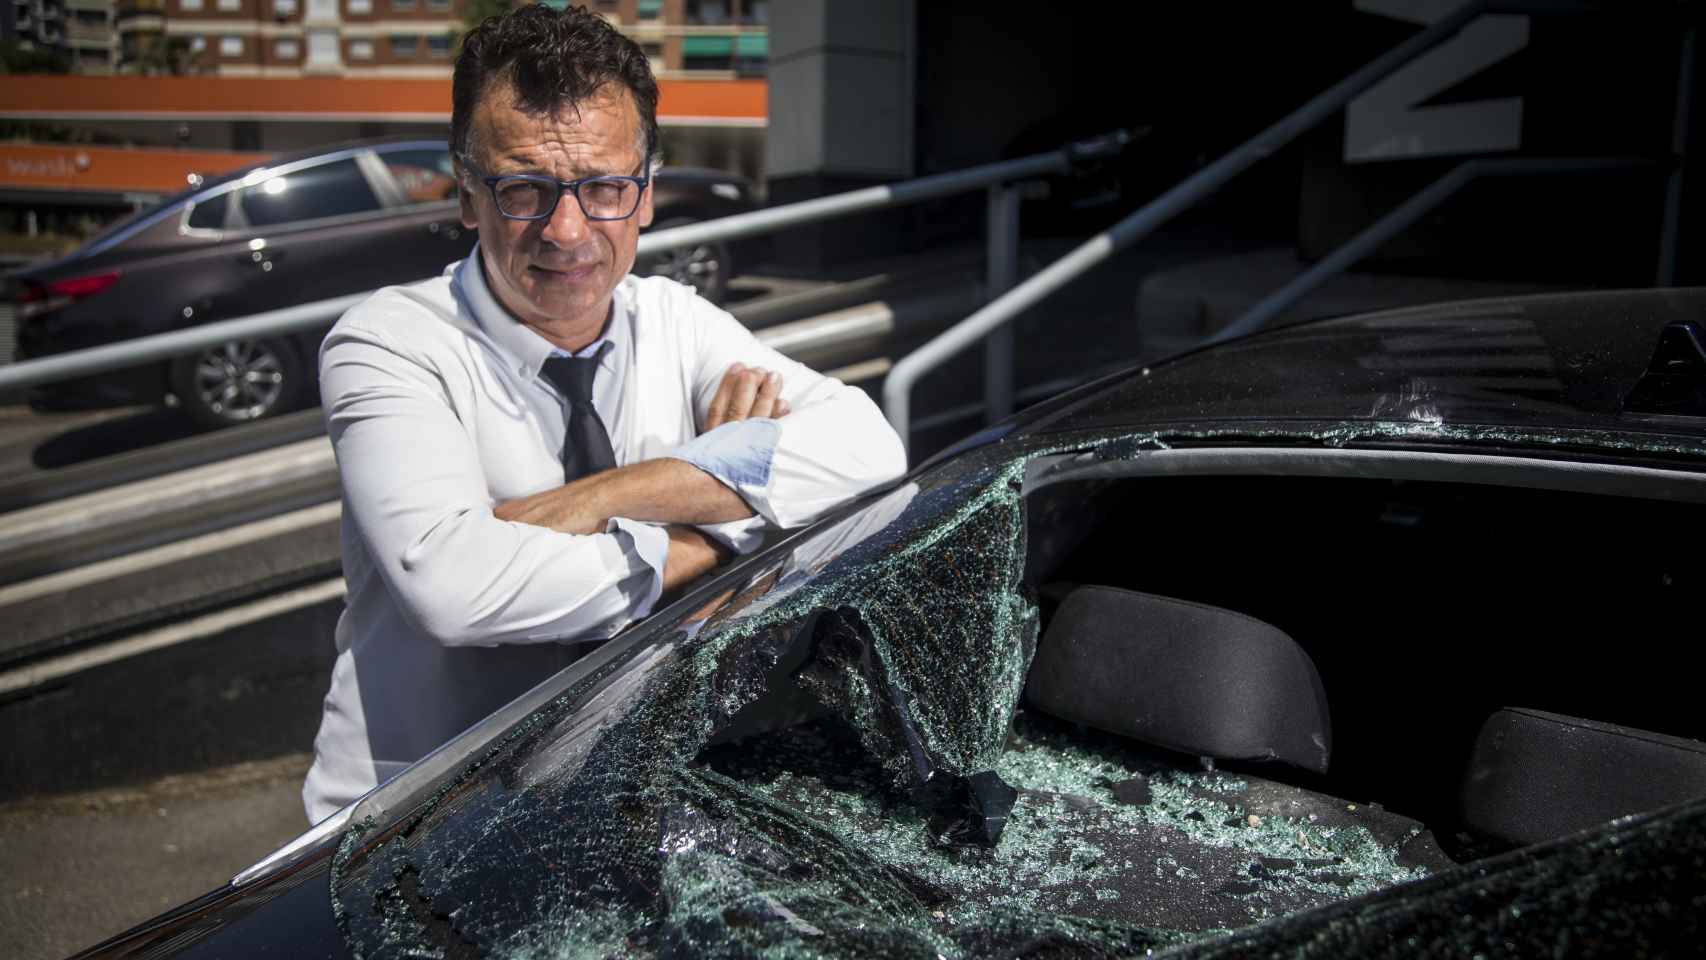 Rafael Navarro, chófer de Cabify en Barcelona, posando ante uno de los vehículos siniestrados.